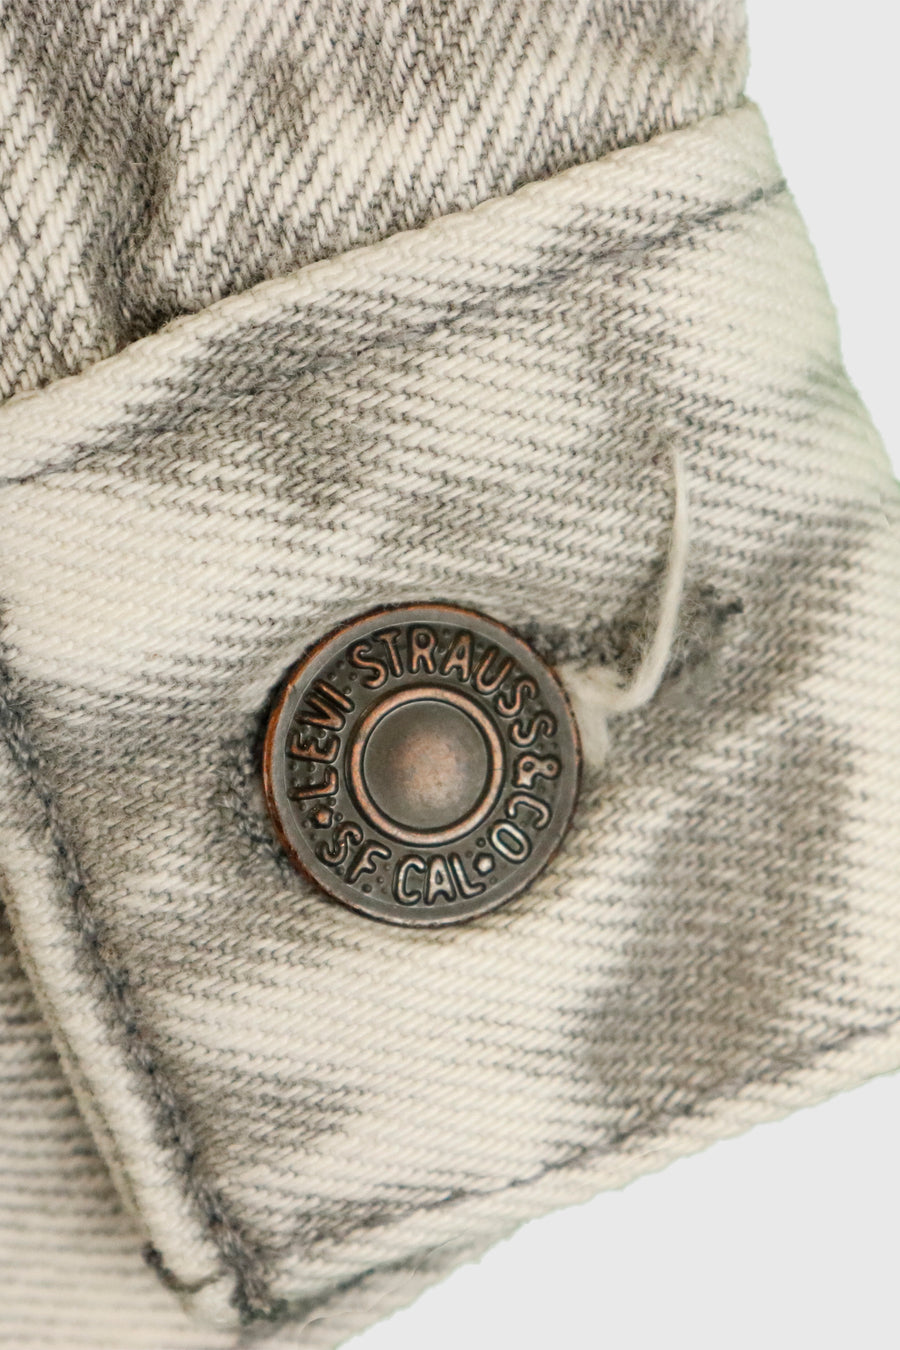 Vintage Levi Strauss & Co. Grey Denim Jacket Sz S